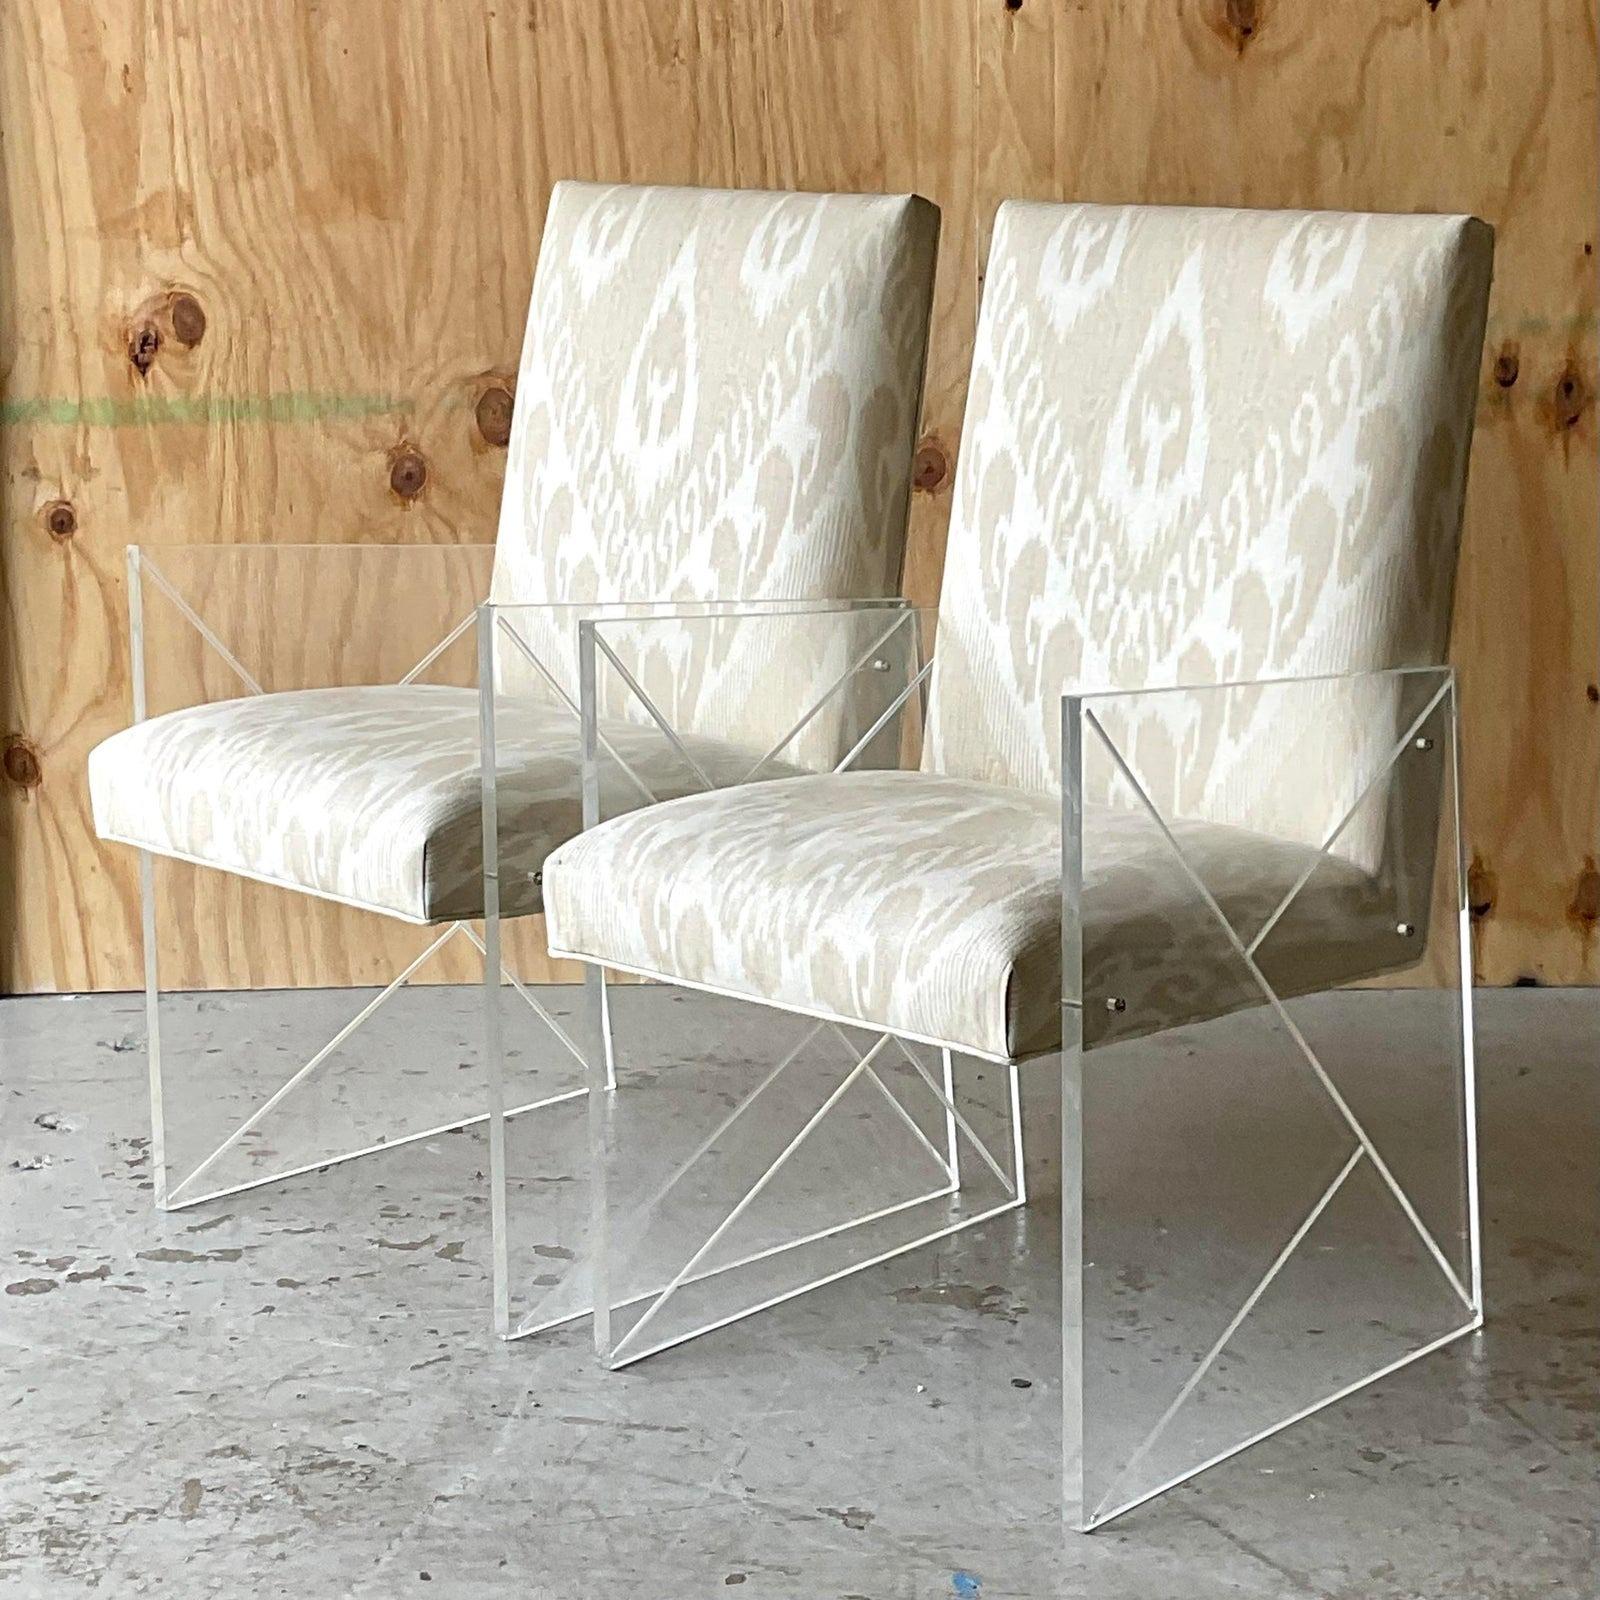 Une paire spectaculaire de chaises vintage Boho By. Fabriqué en France vers les années 60 avec une incroyable attention aux détails. Panneaux latéraux à l'aspect écorché chic et rembourré en imprimé Ikat Thibault. Acquis d'une succession de Palm